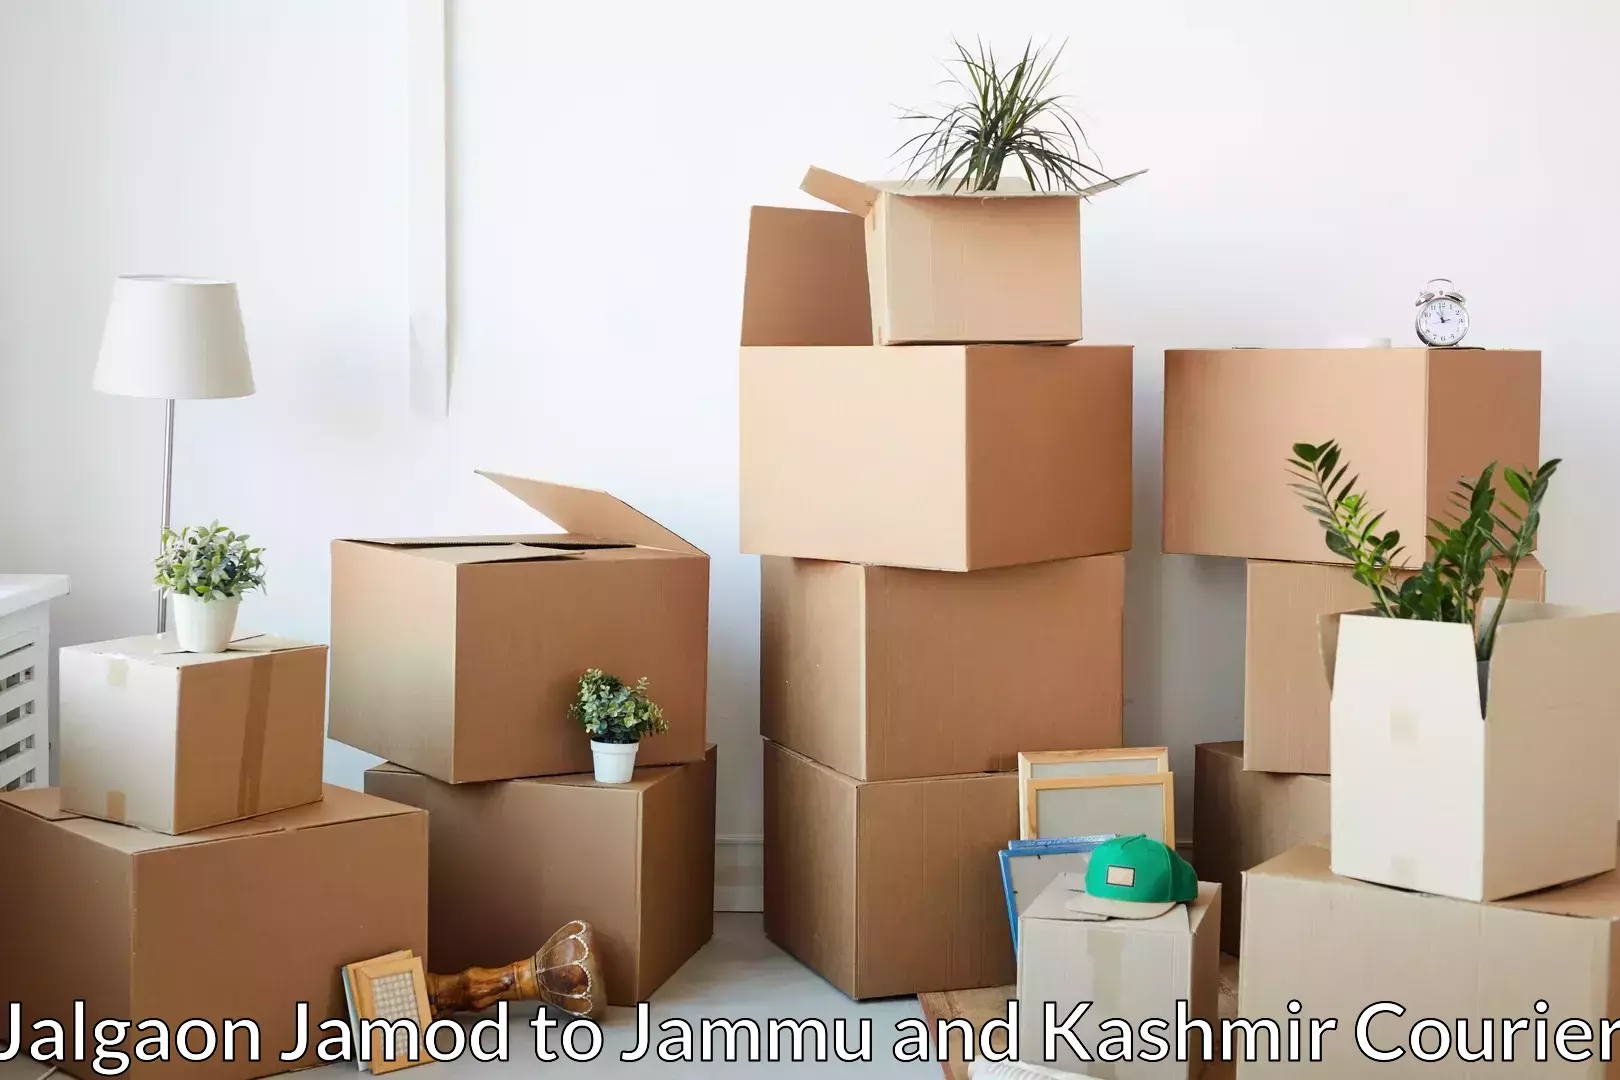 Moving and packing experts Jalgaon Jamod to Samba